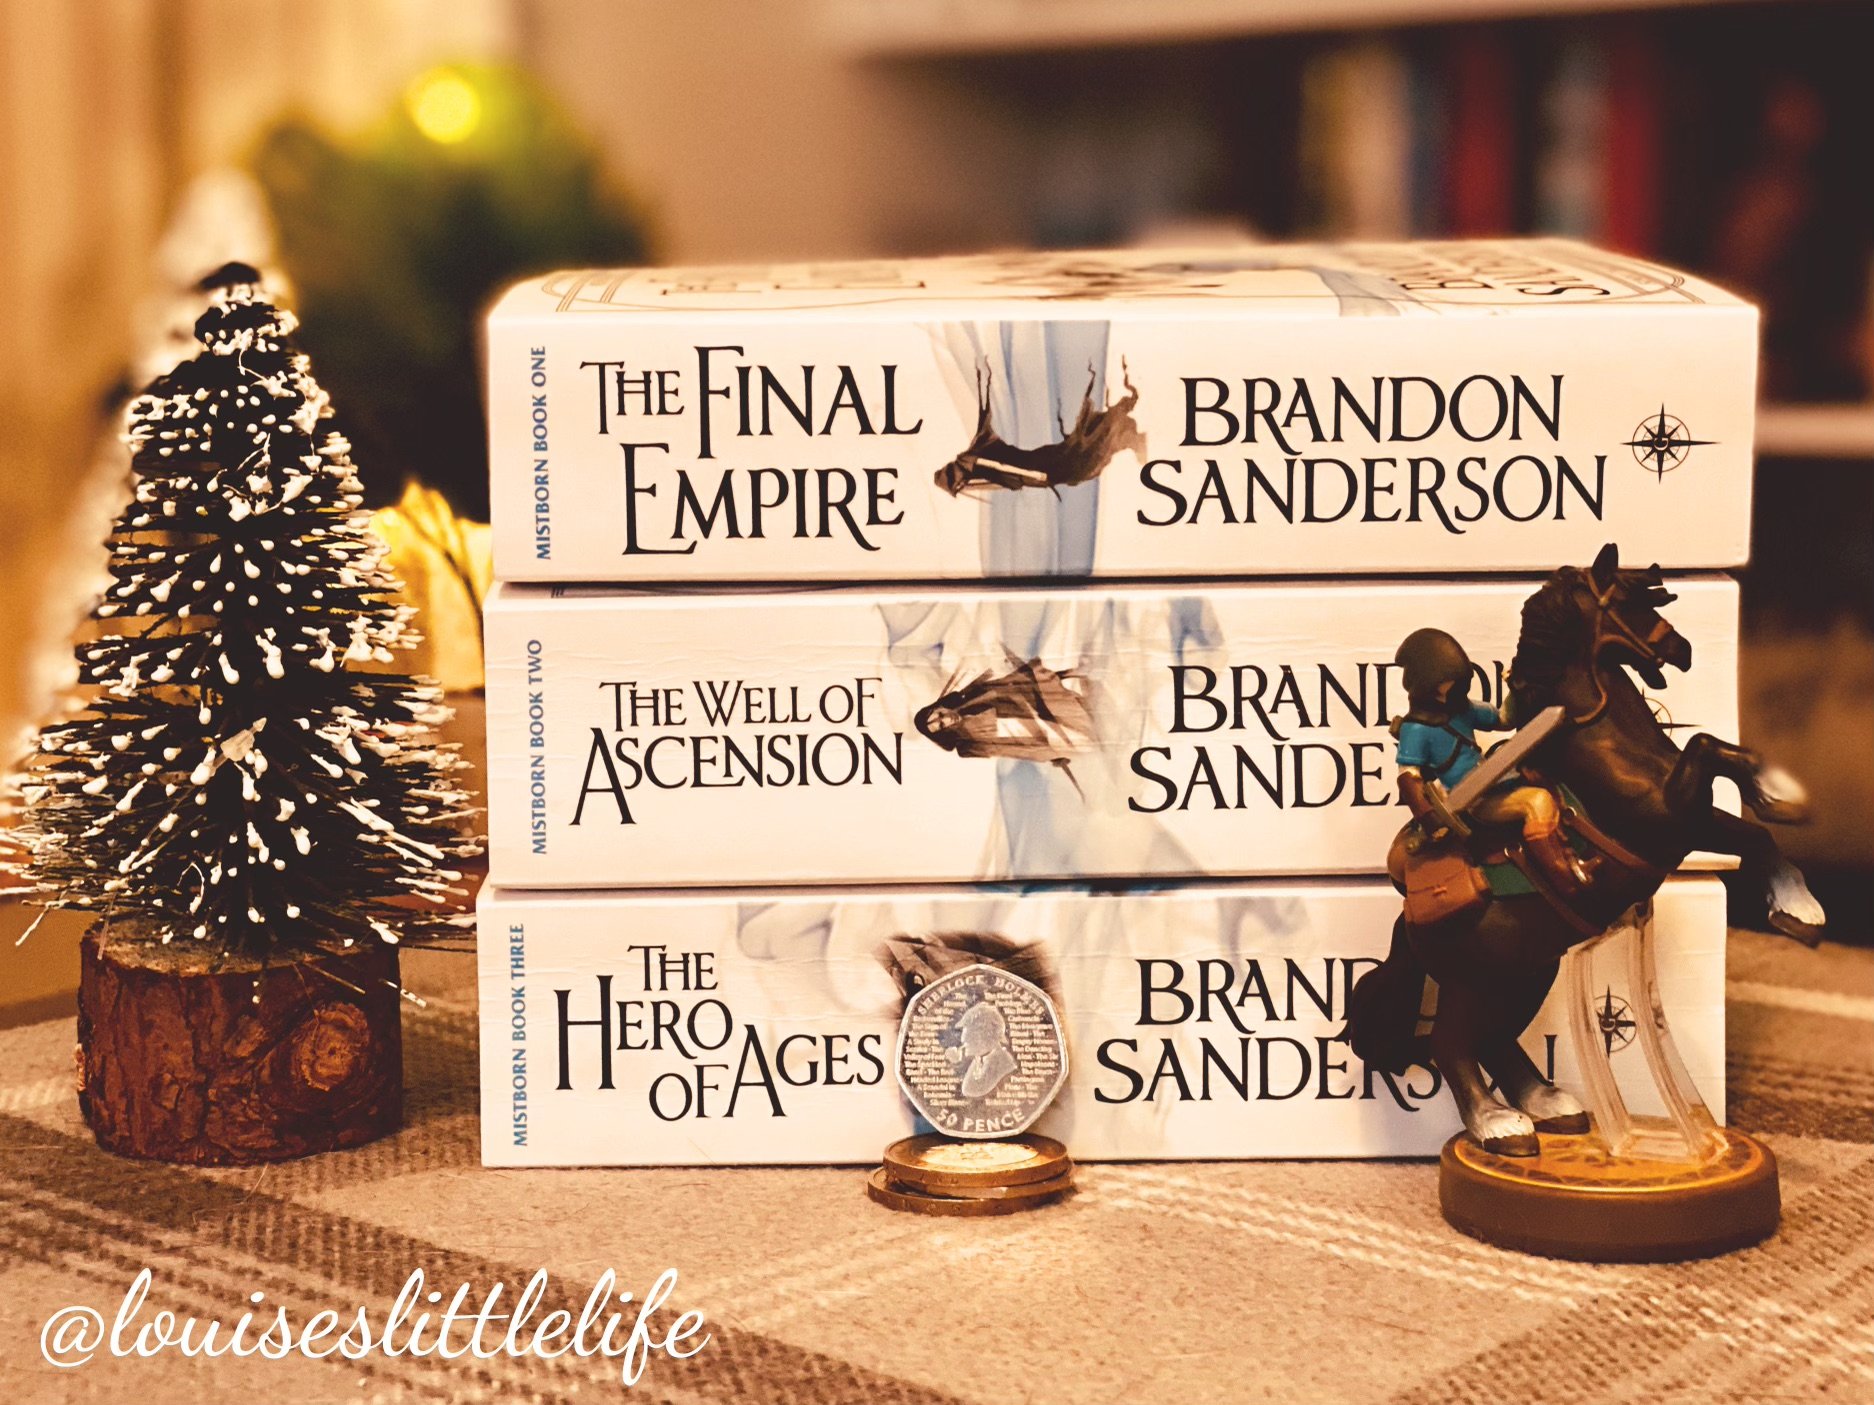 The Final Empire: Mistborn Book One - Brandon Sanderson 